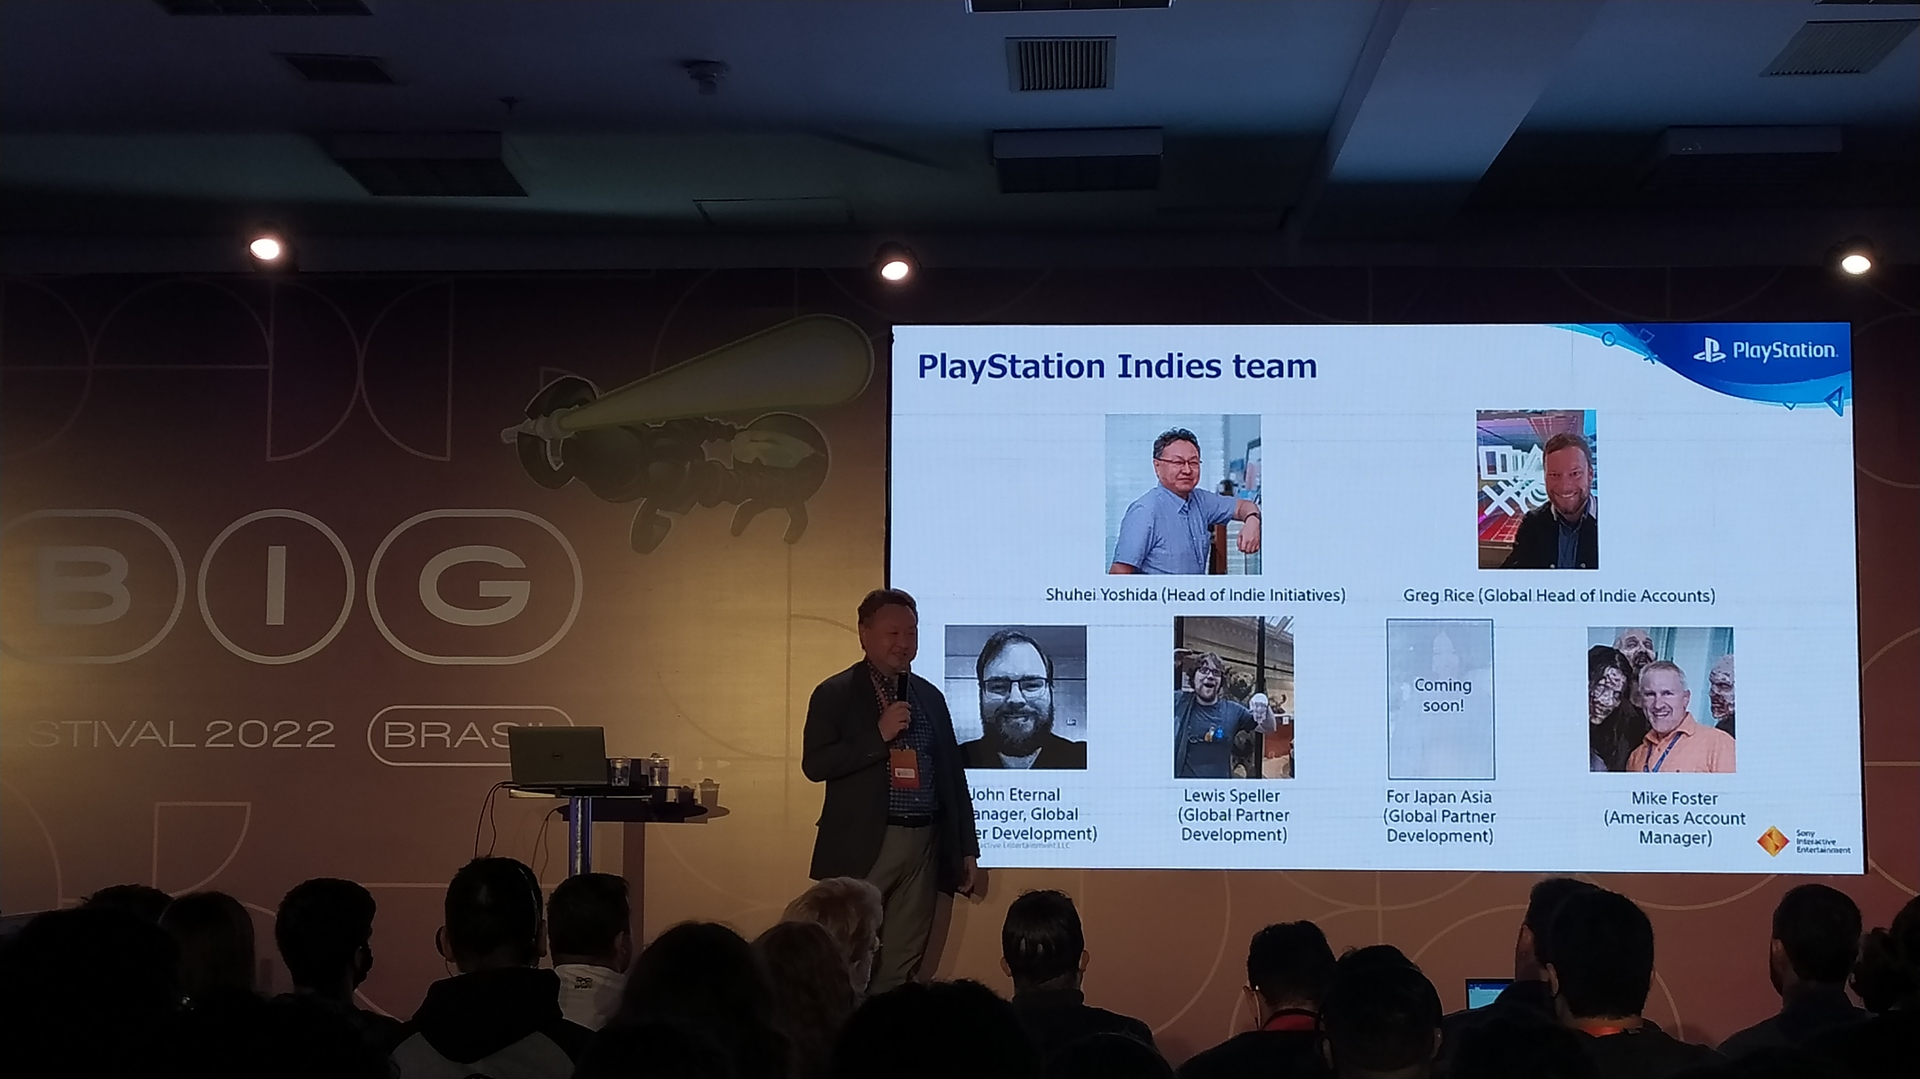 Shurrei Yoshida palestrou sobre a importância de jogos indies nas plataformas PlayStation.